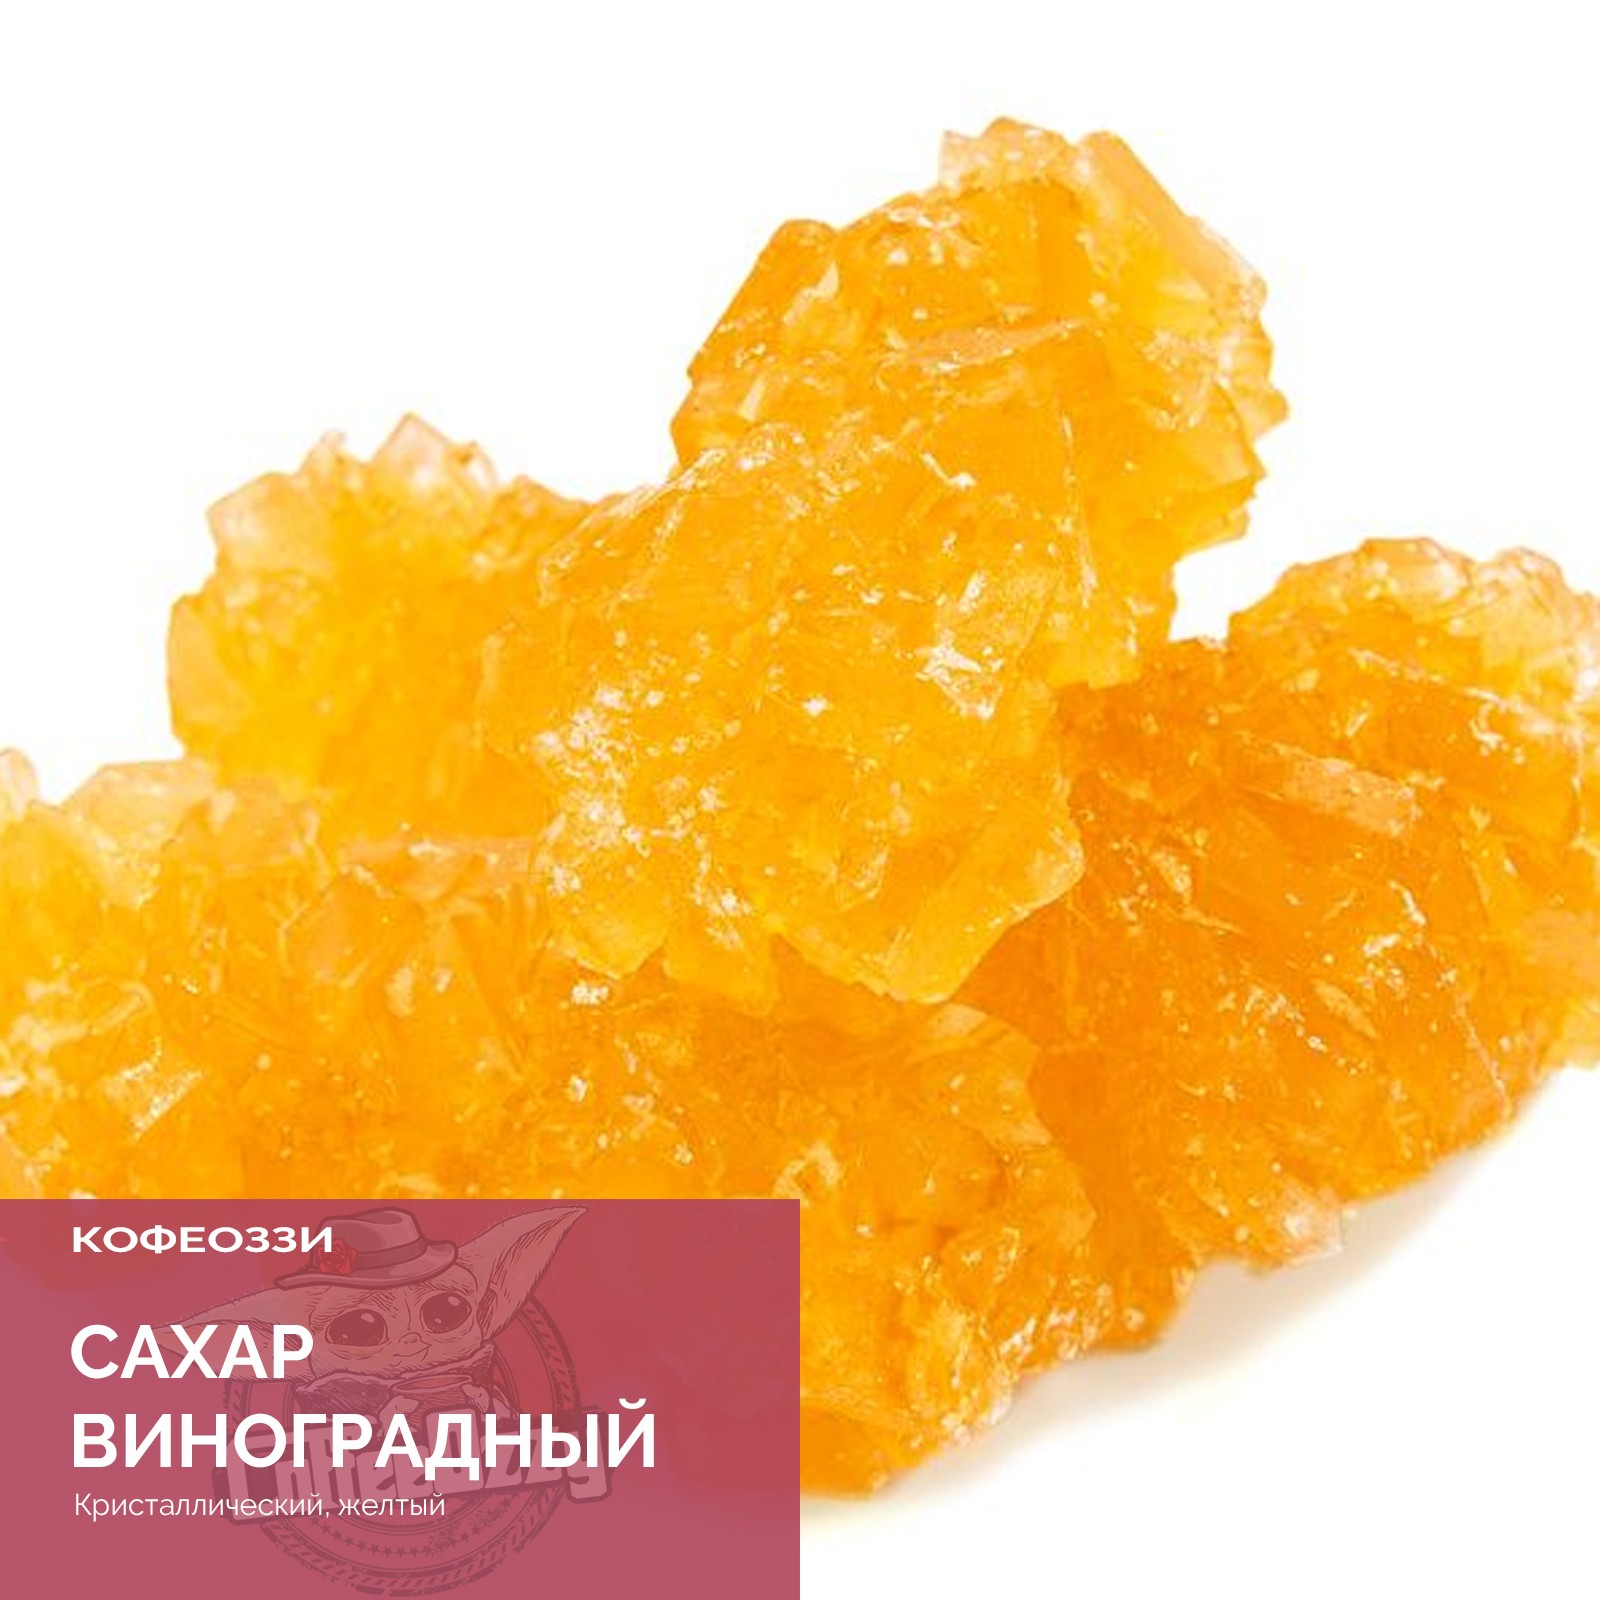 Детский сахар купить. Нават виноградный сахар. Кристаллический сахар нават. Узбекский сахар нават. Желтый сахар нават.